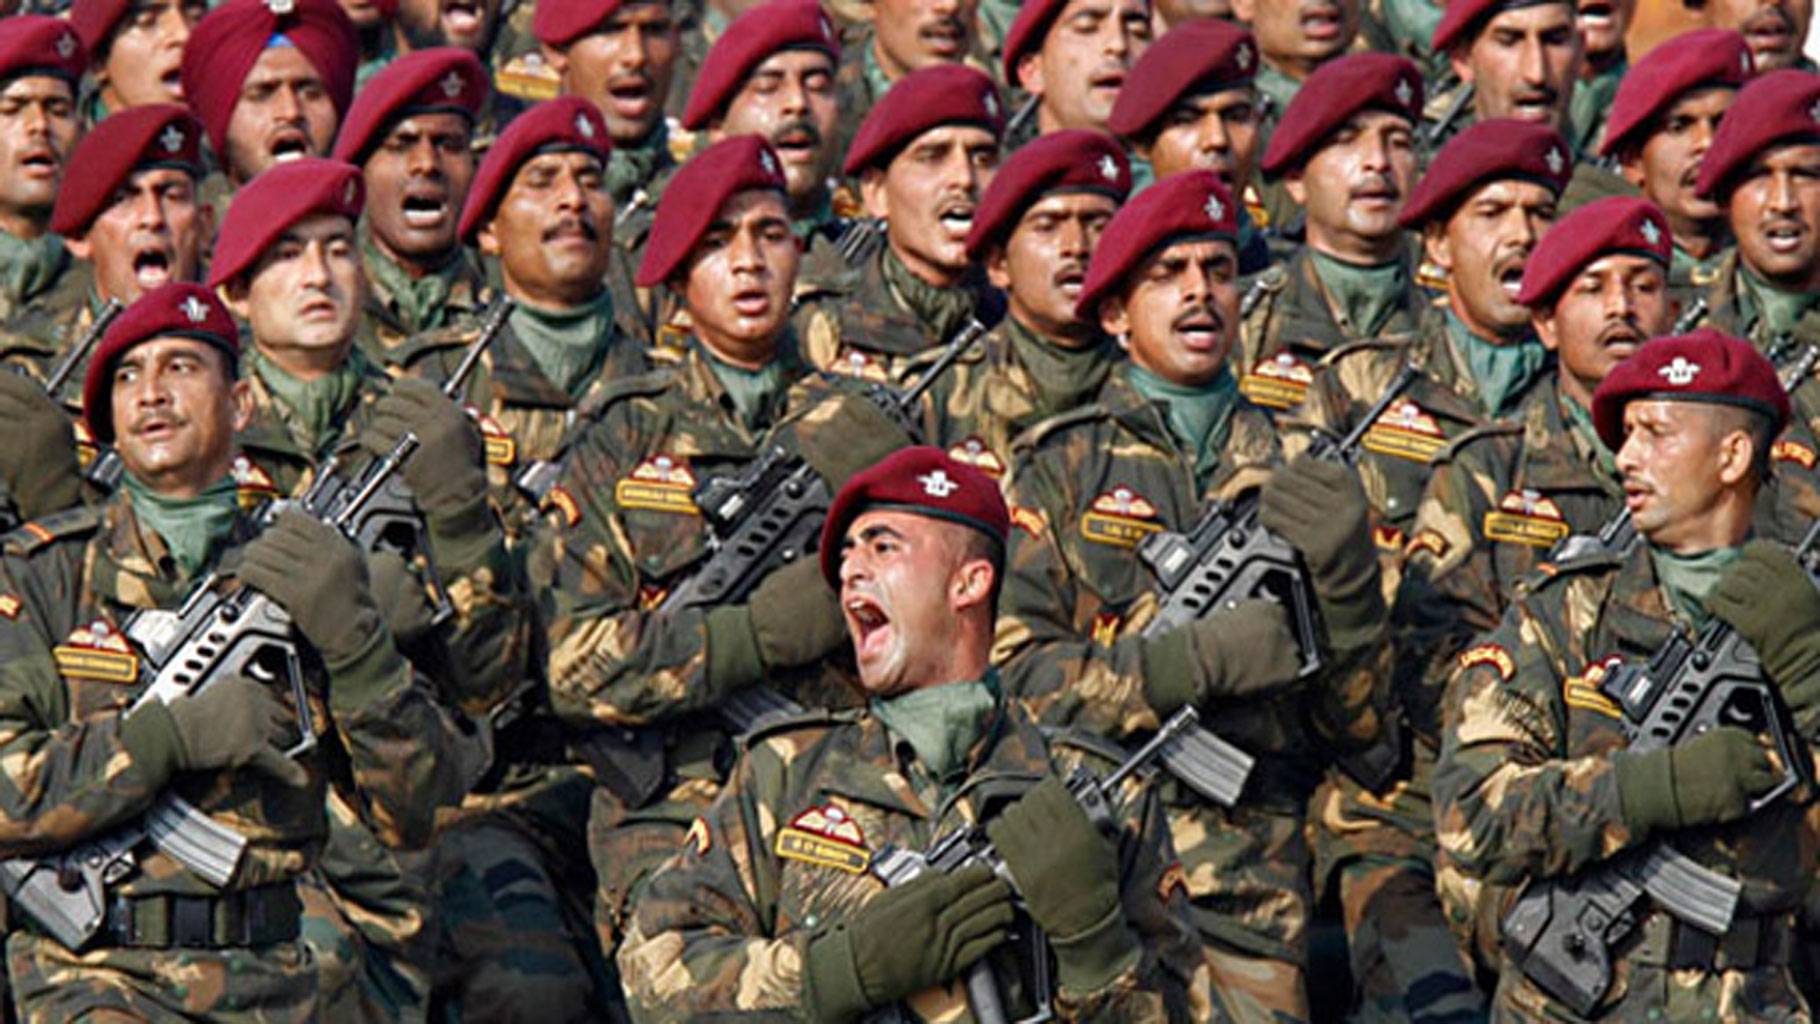 ارتش هند